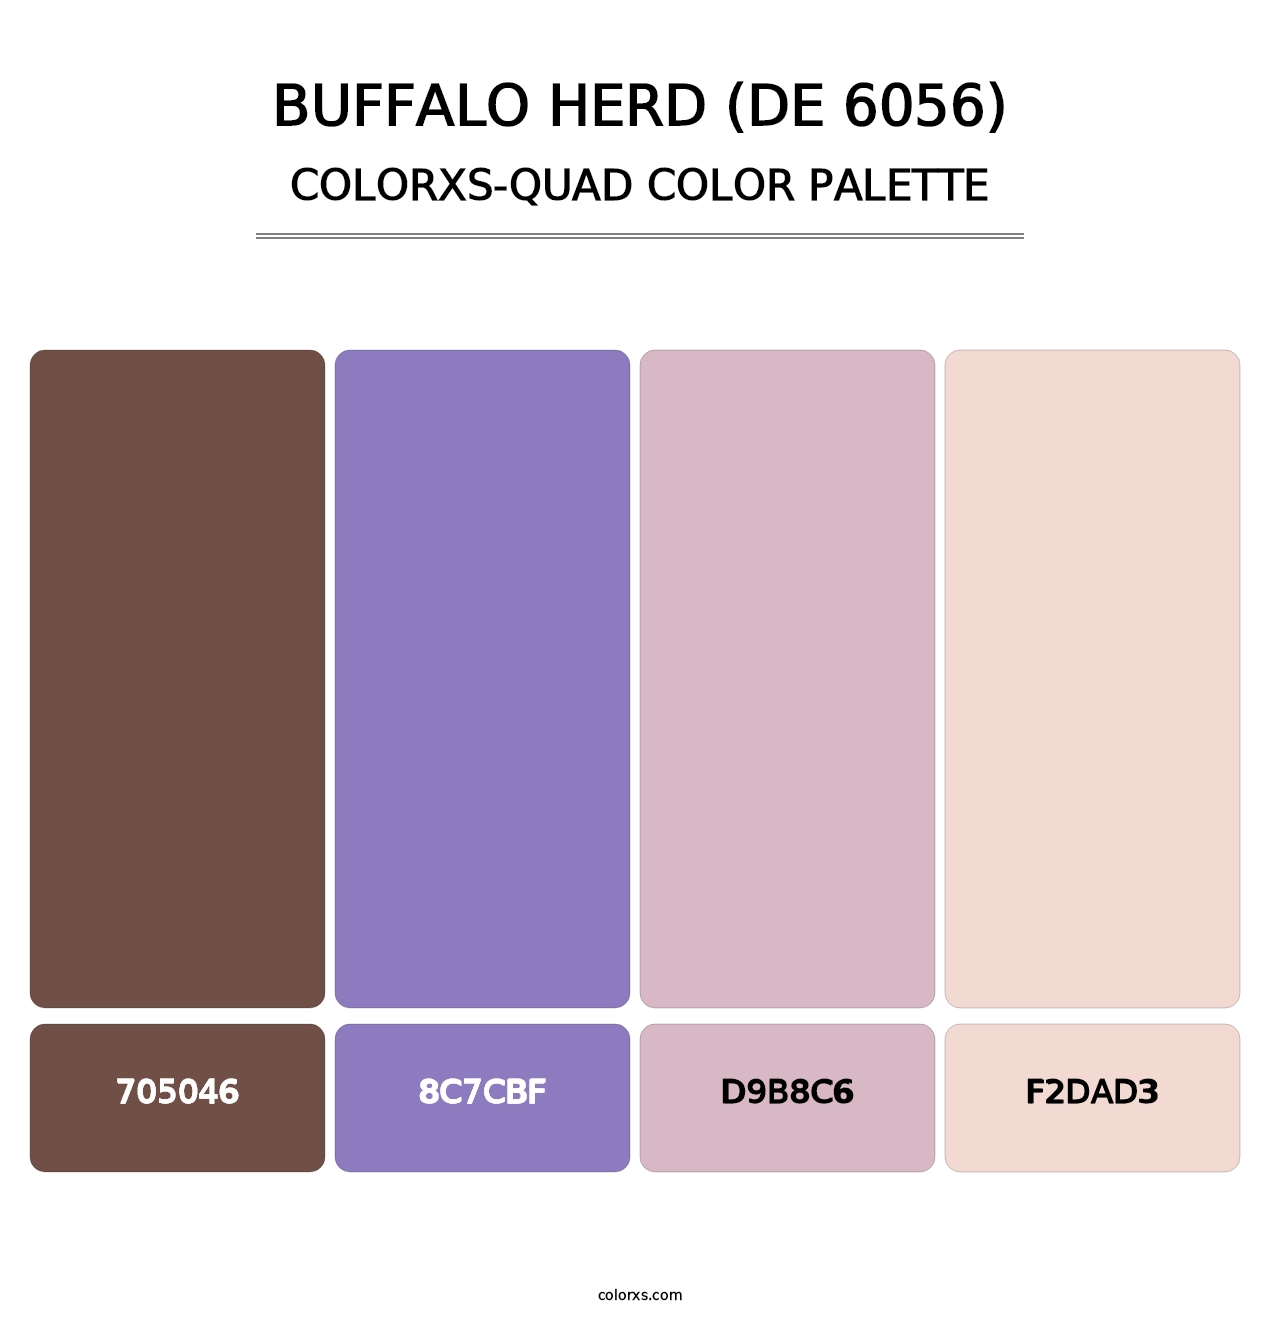 Buffalo Herd (DE 6056) - Colorxs Quad Palette